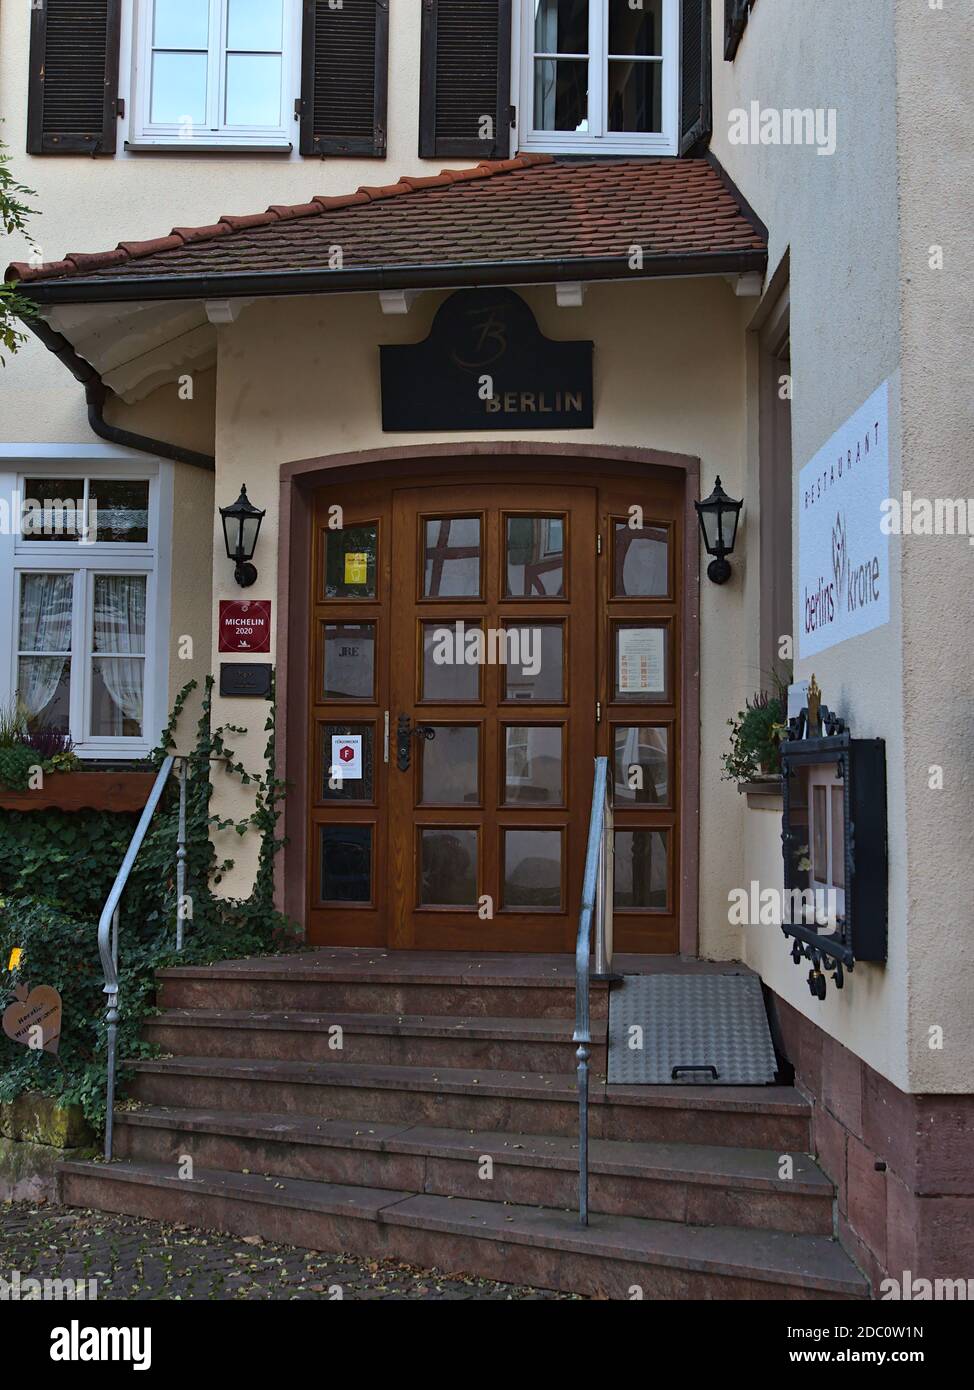 Bad Teinach-Zavelstein, Germania - 11/14/2020: Ingresso principale del ristorante gourmet Berlins Krone temporaneamente chiuso (due Covid-19). Foto Stock